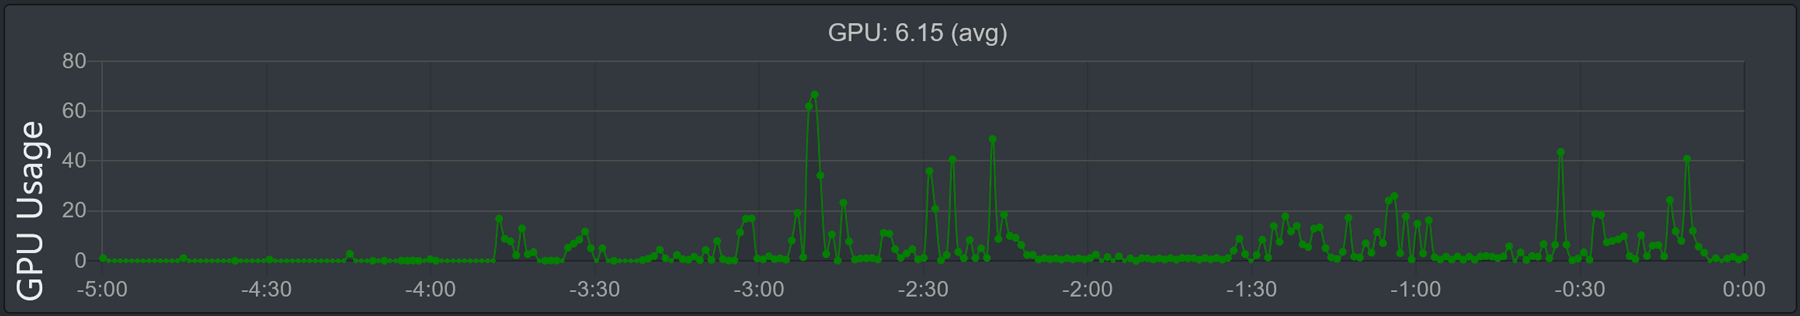 Imagem do gráfico "Uso da GPU"